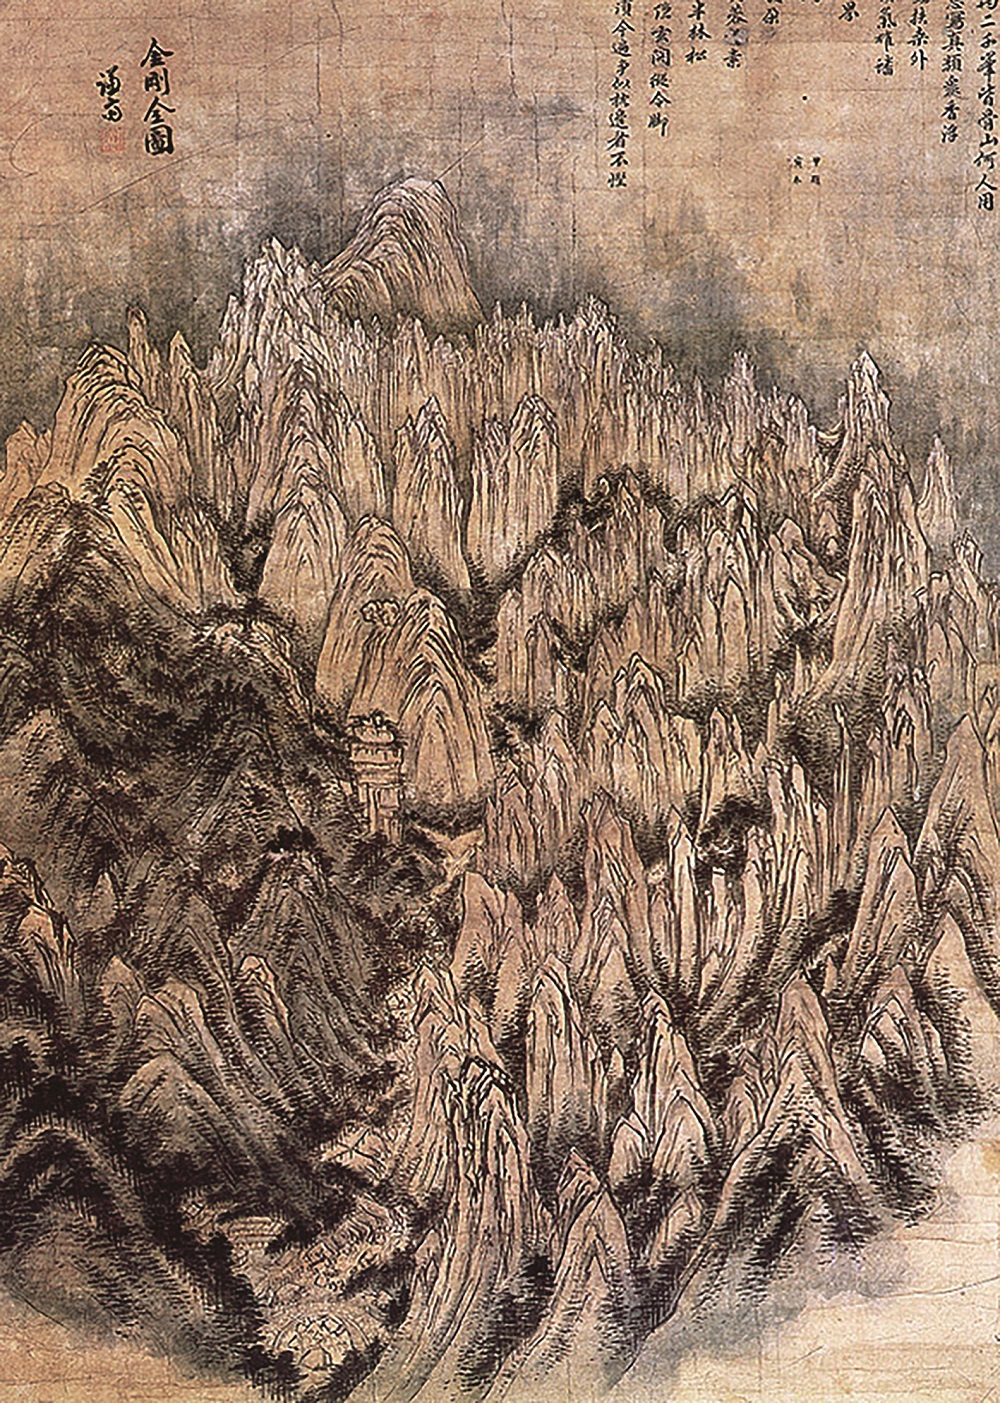 겸재 정선-금강전도, 1734, 비단에 수묵담채, 130.8×94.5㎝. 삼성미술관 리움 소장